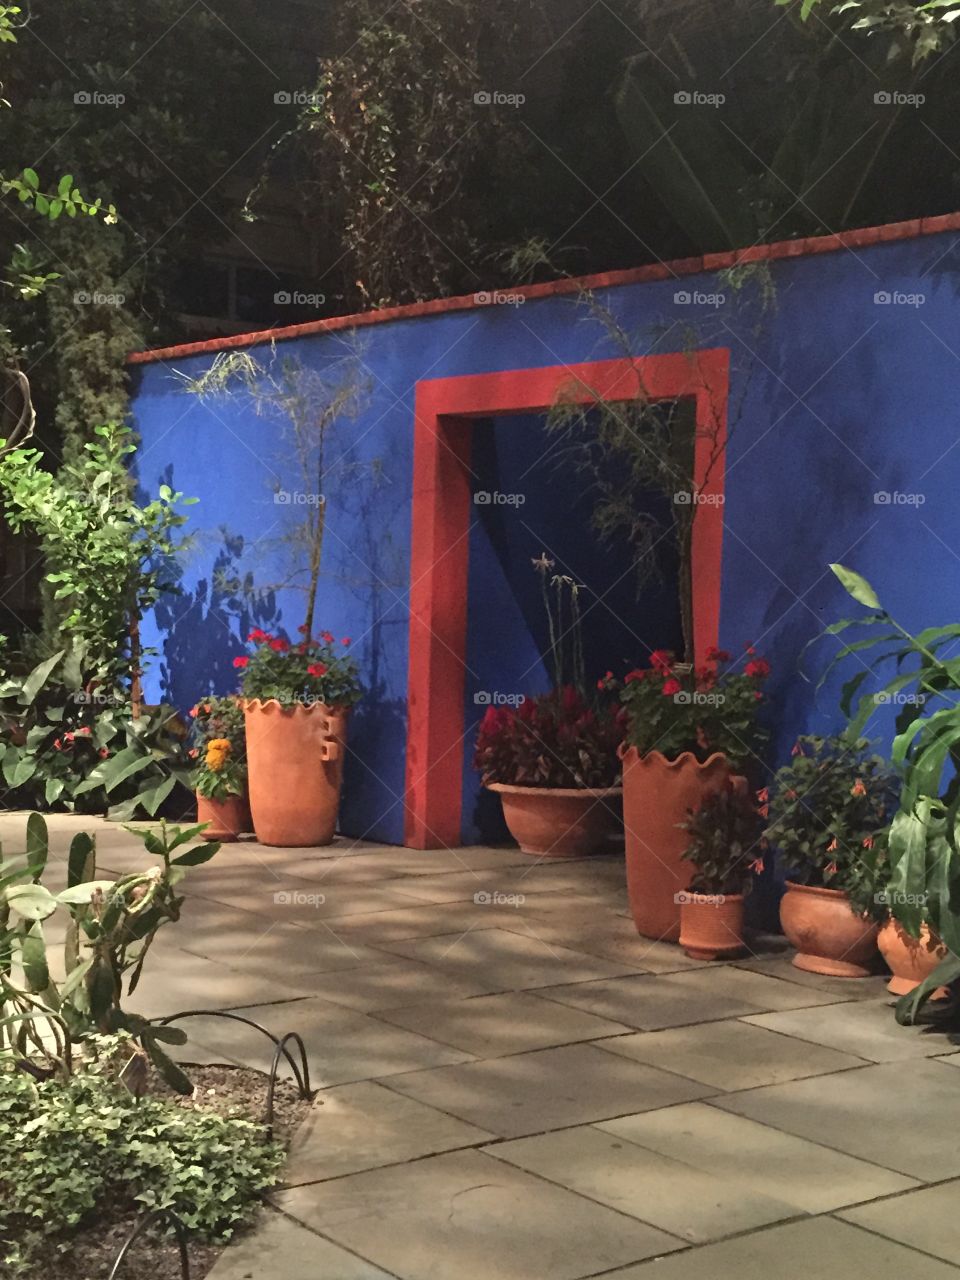 La Casa Azul. Visiting the garden at La Casa Azul recreated by the Botanical Garden in NY